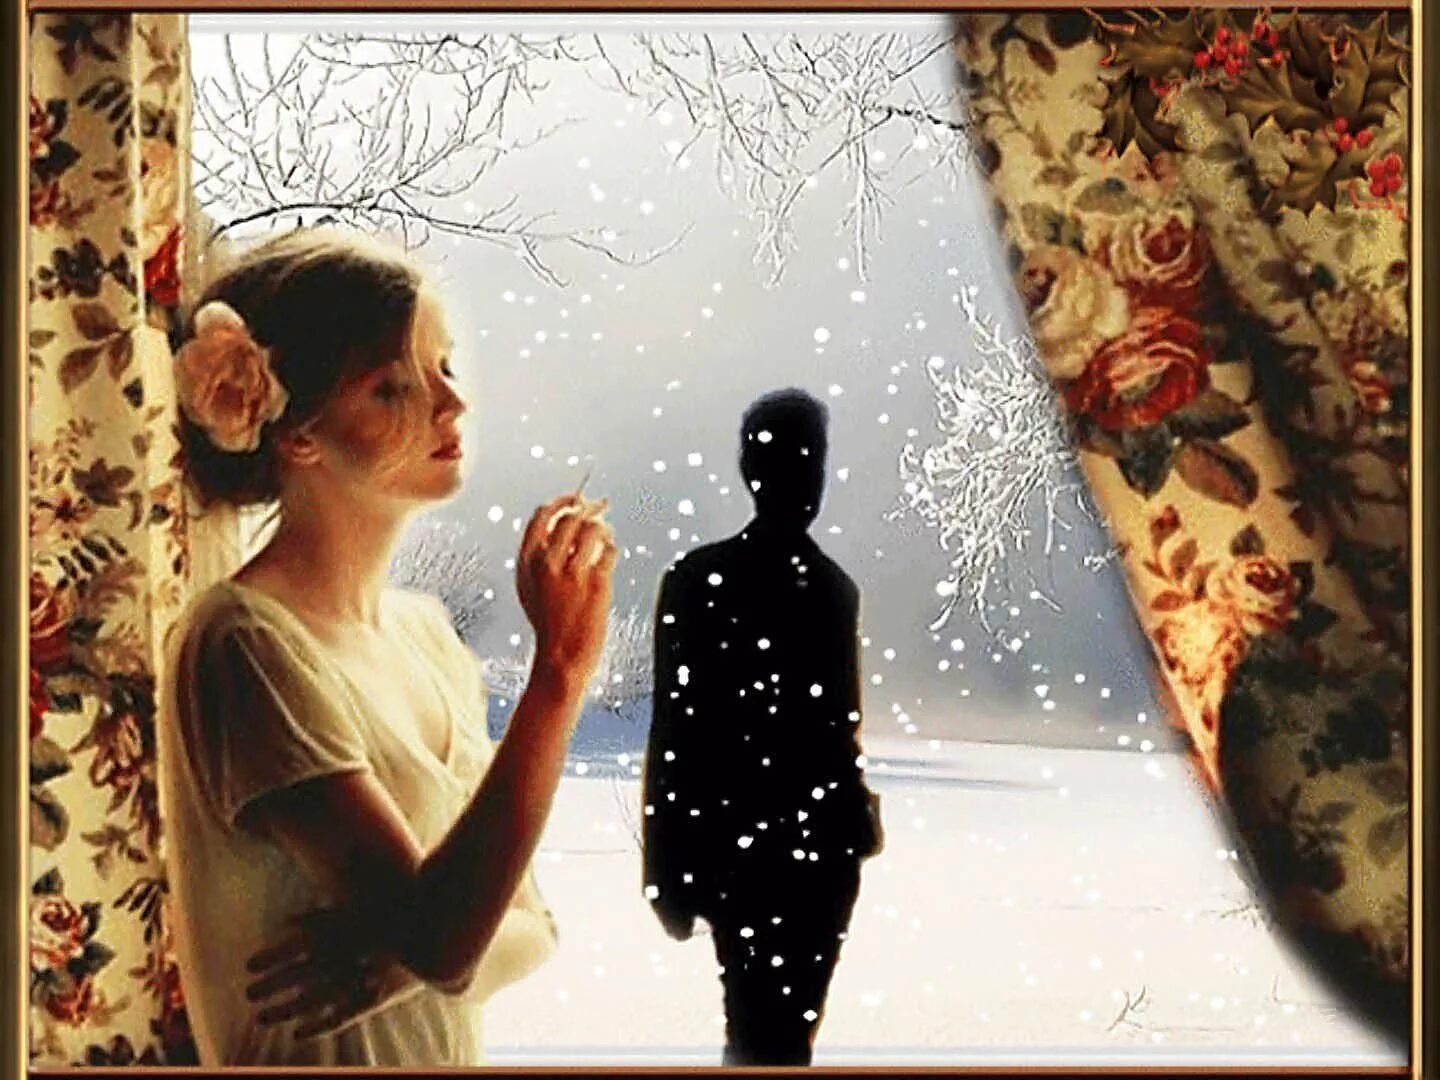 Ждет у окна. Зима расставание. Мужчина и женщина у окна. Расставание любовь зима. Неутомимая смотрю на тебя и думаю